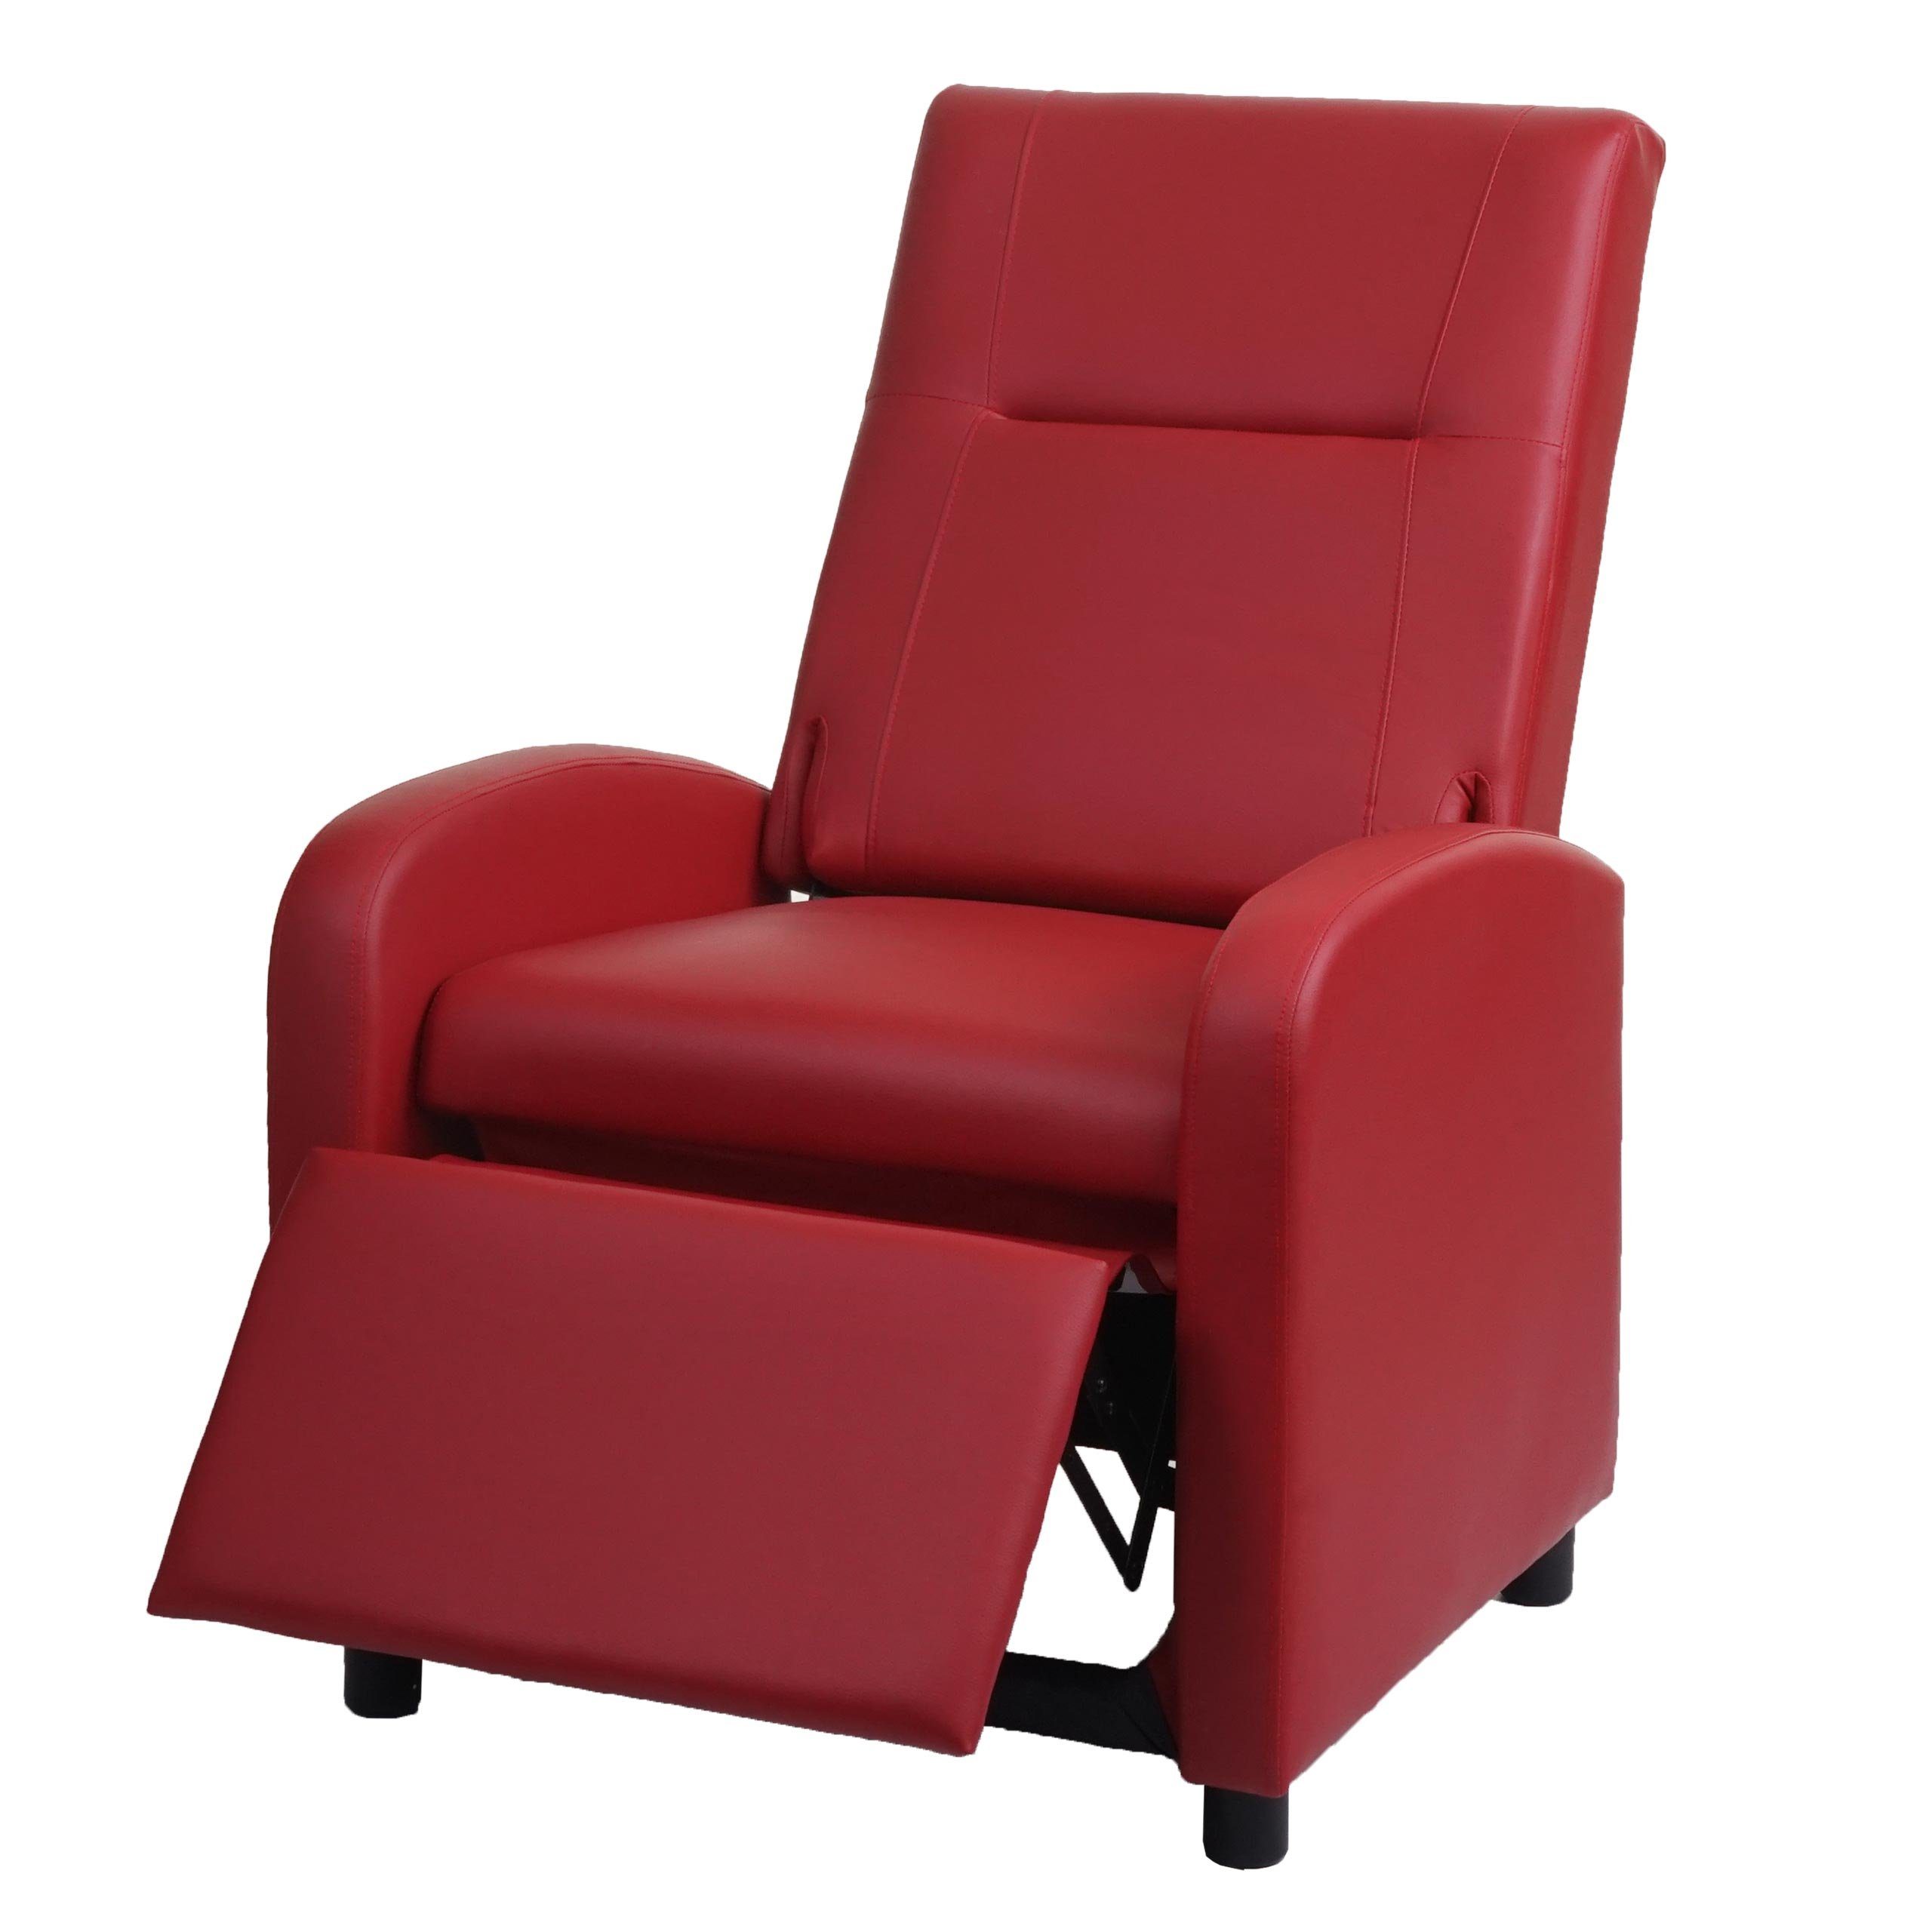 MCW TV-Sessel MCW-H18, Synchrone Verstellung der Rücken- und Fußlehne, Synchrone Verstellung der Rücken- und Fußlehne, Klappbare Rückenlehne rot